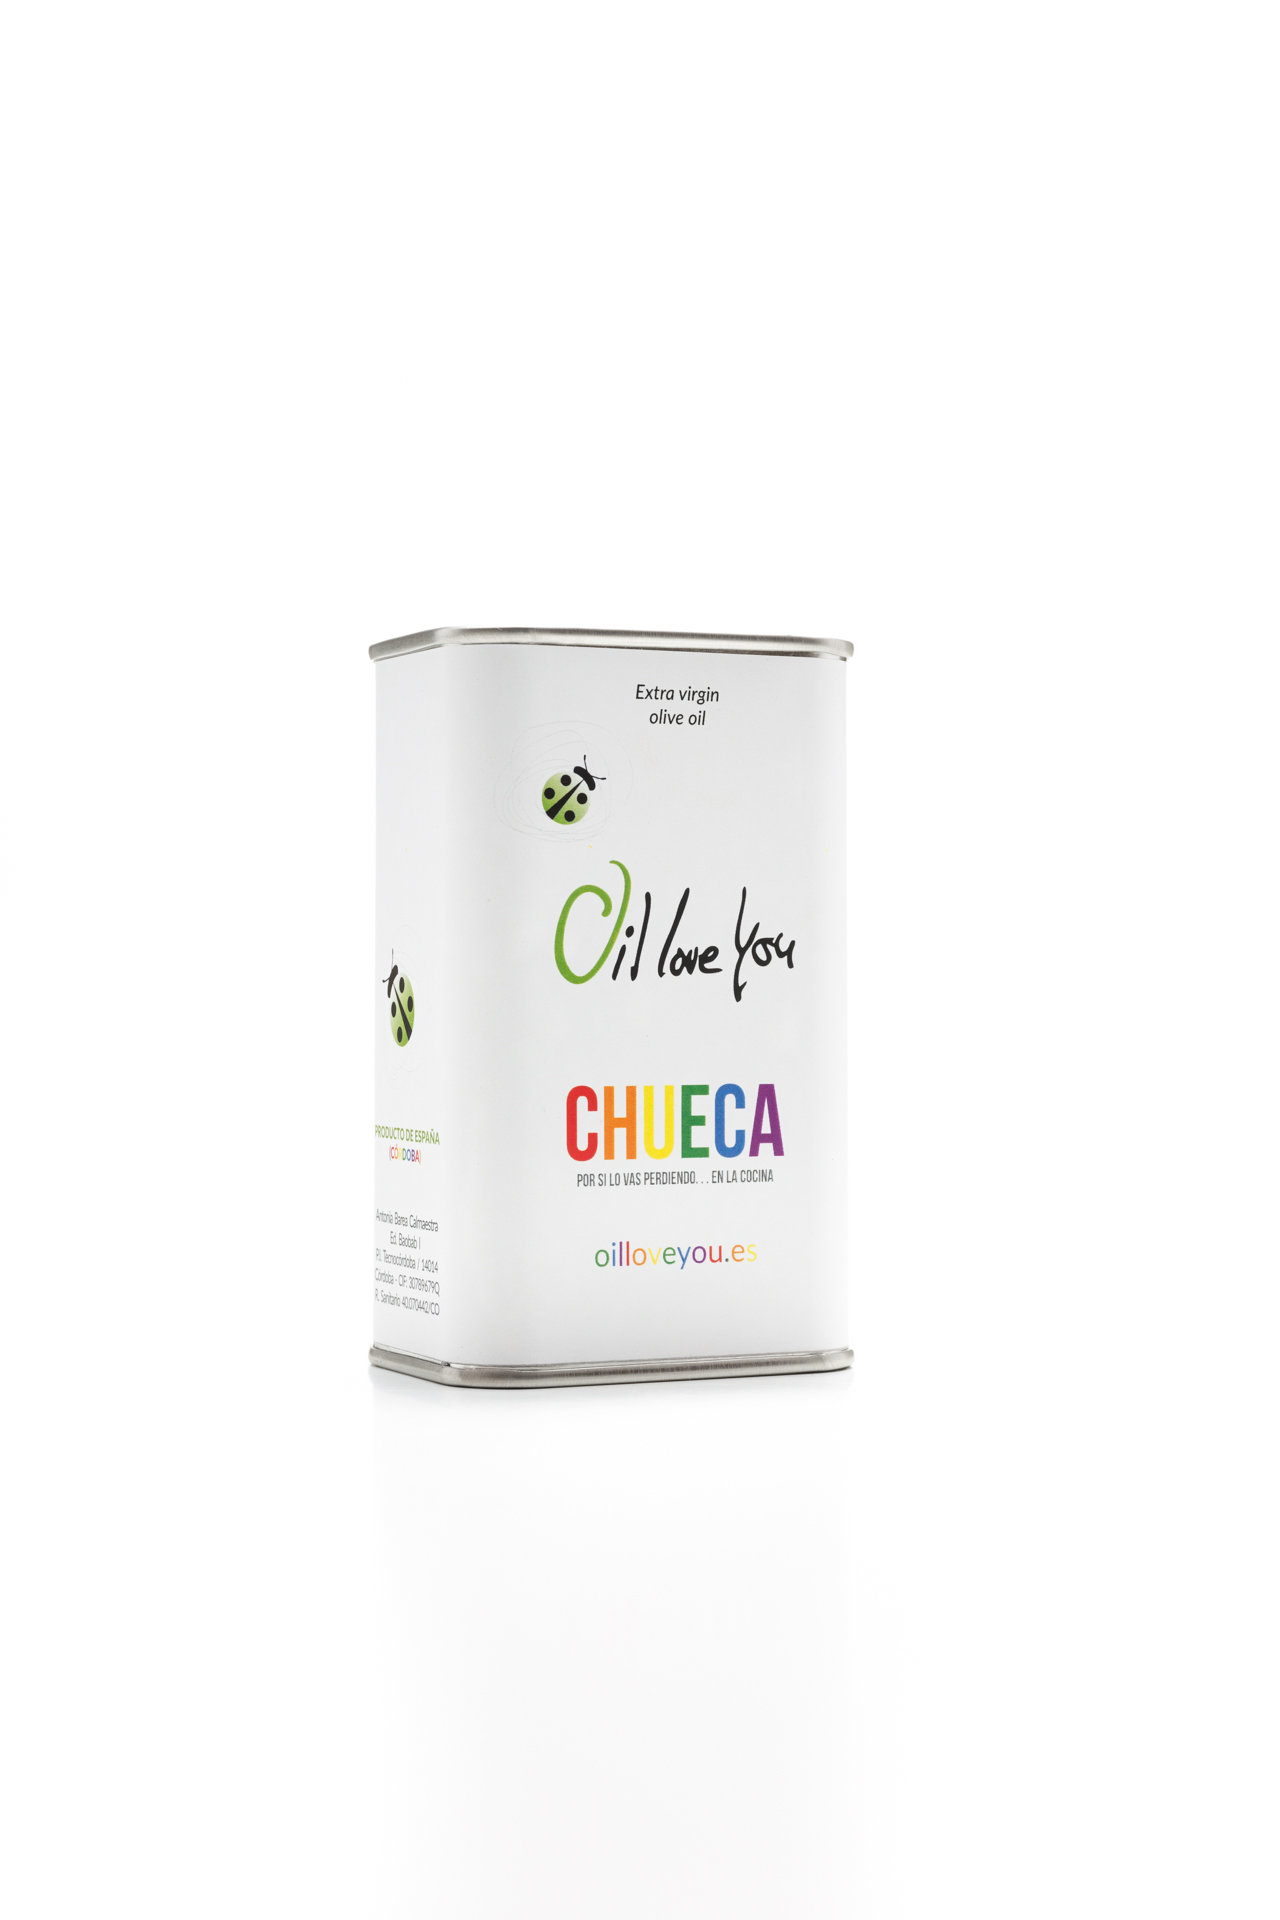 lata-de-aceite-de-oliva-virgen-extra-250ml--EDICIÓN-CHUECA-oilloveyou (2)